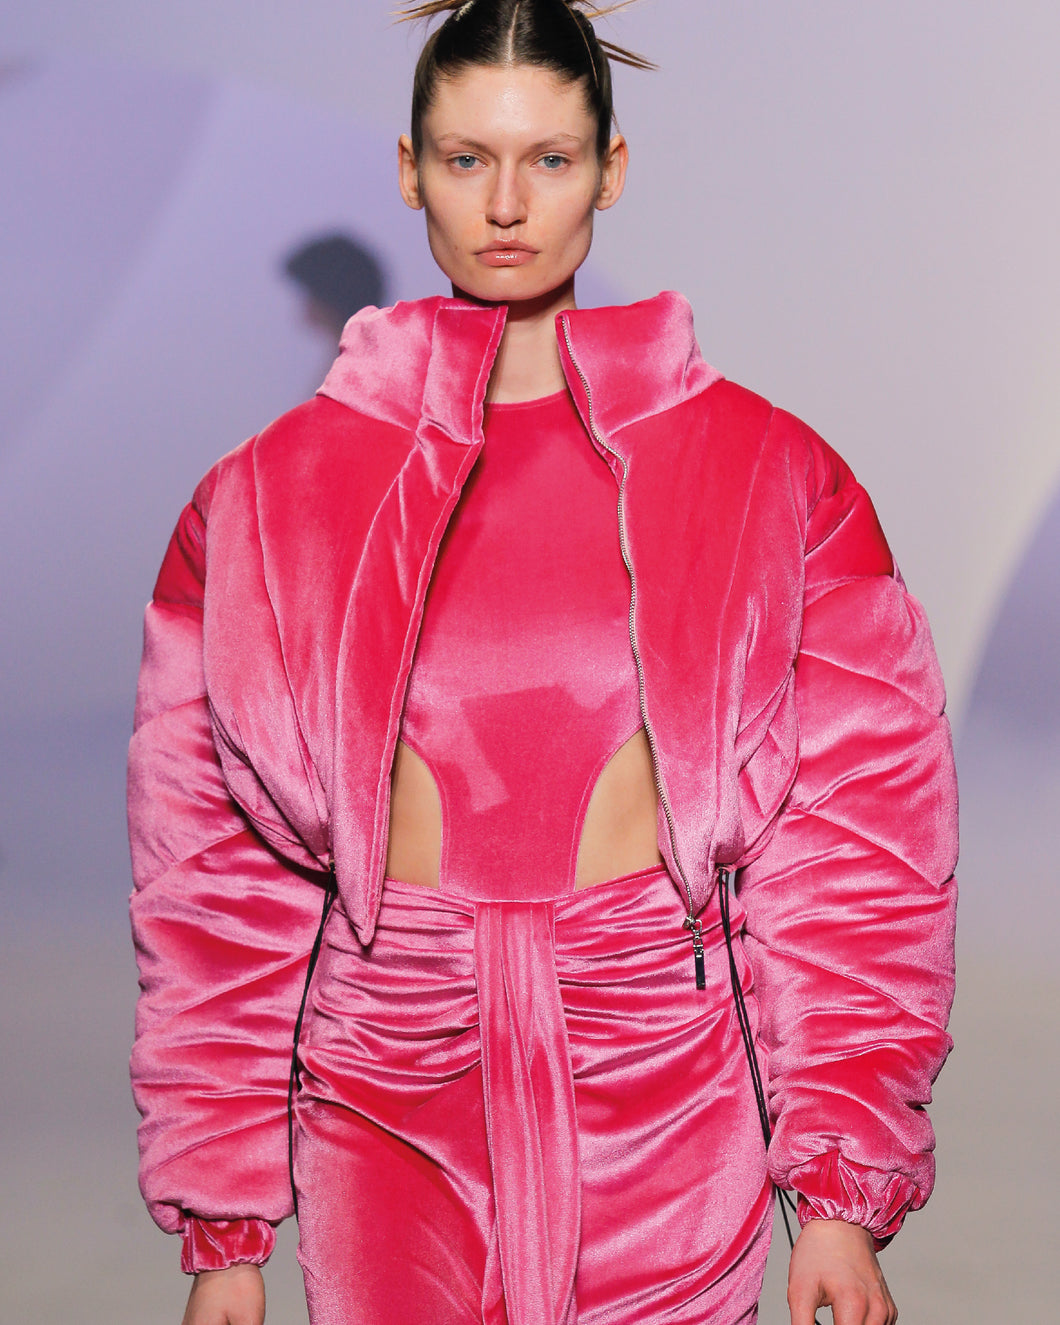 Pink Velvet Bodysuit